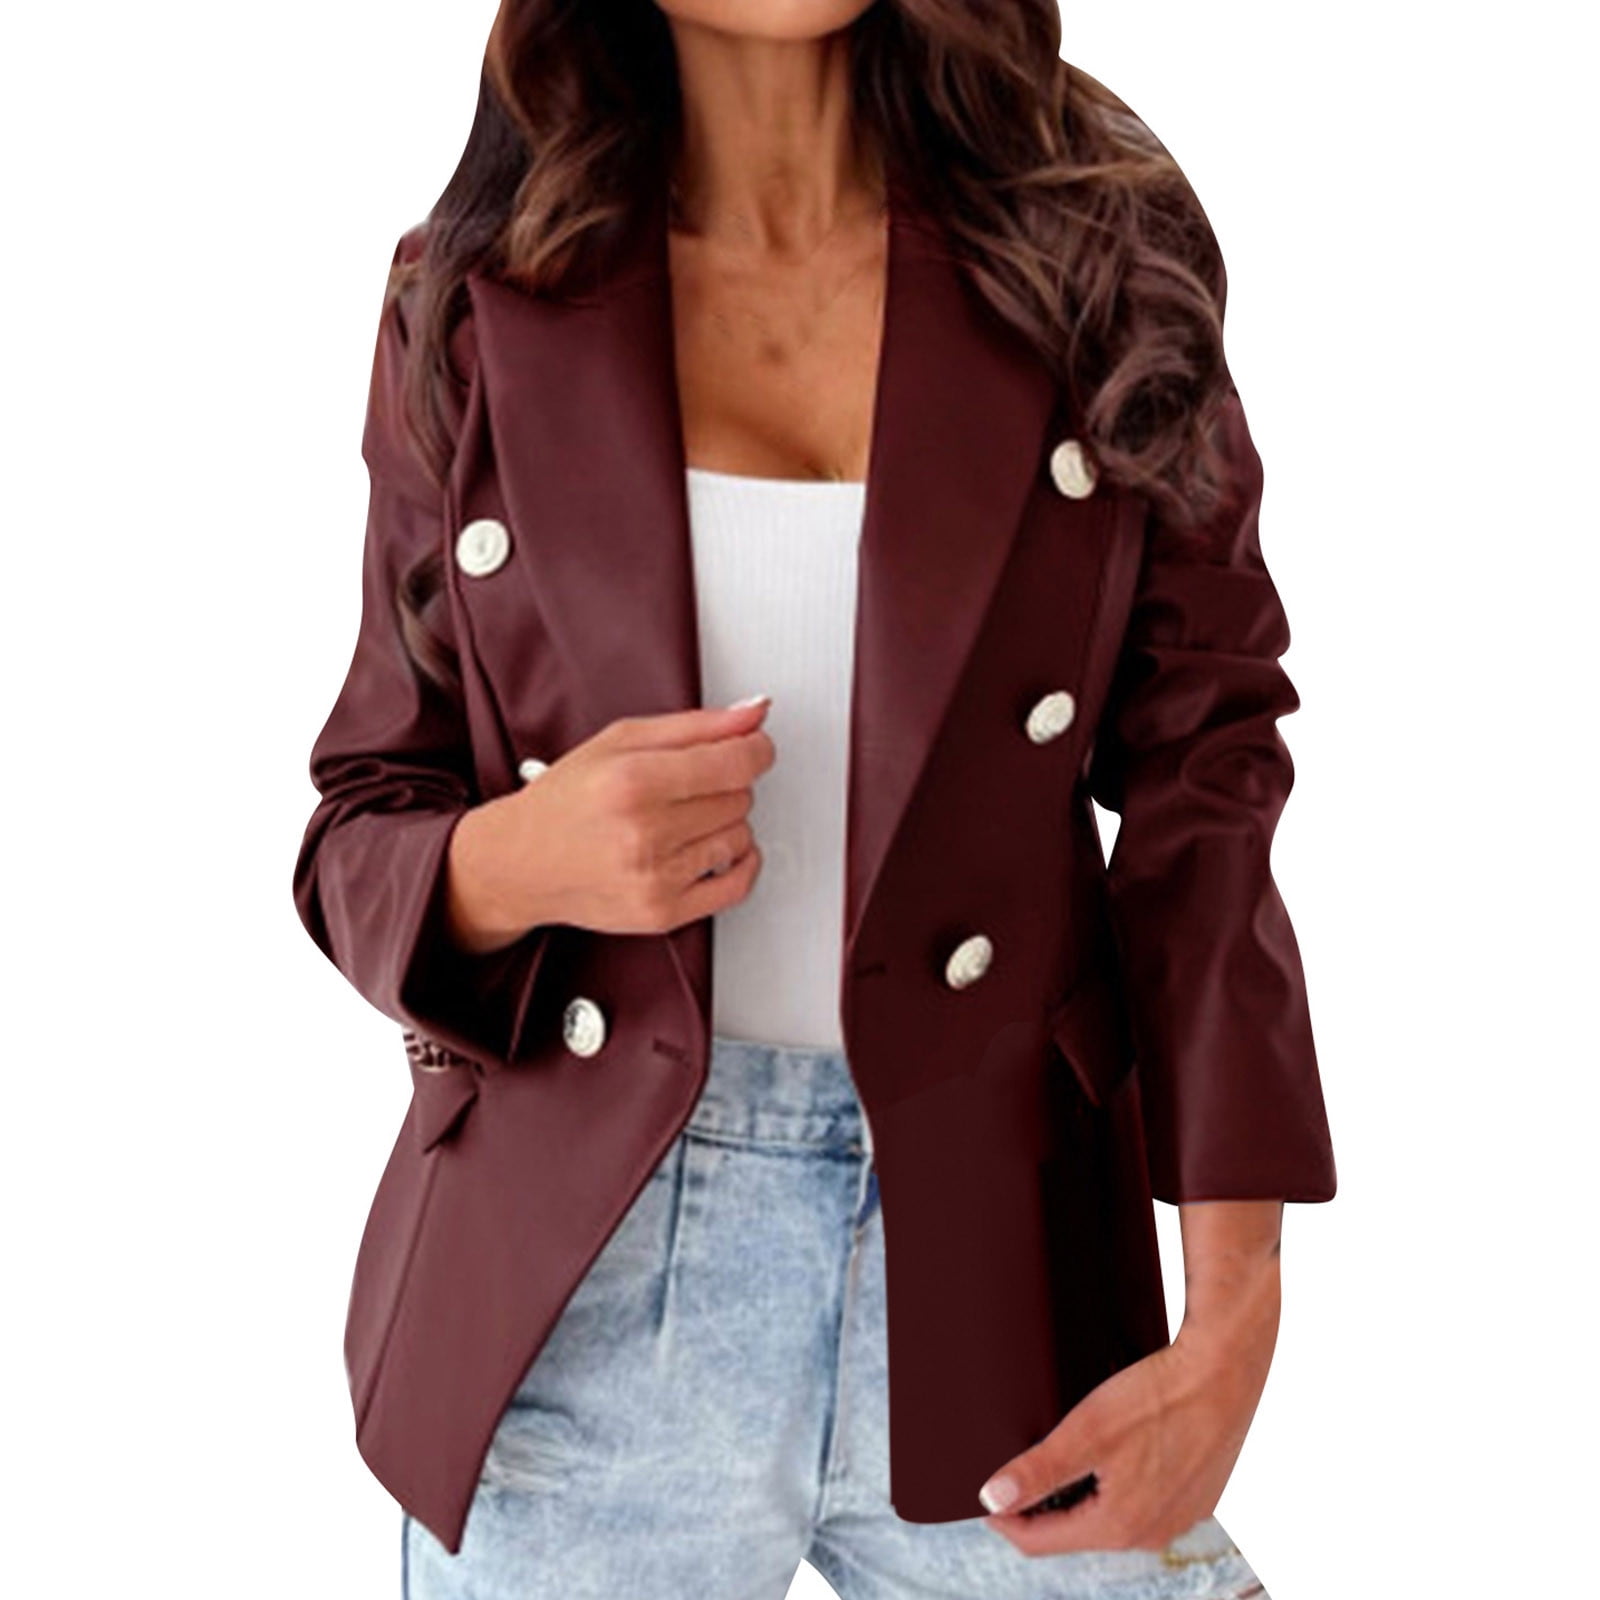 XFLWAM Womens Oversized Leather Jacket Long Sleeve Faux Leather Blazer  Lapel Boyfriend PU Button Down Shacket Coat with Pockets Streetwear Wine  Red XL 